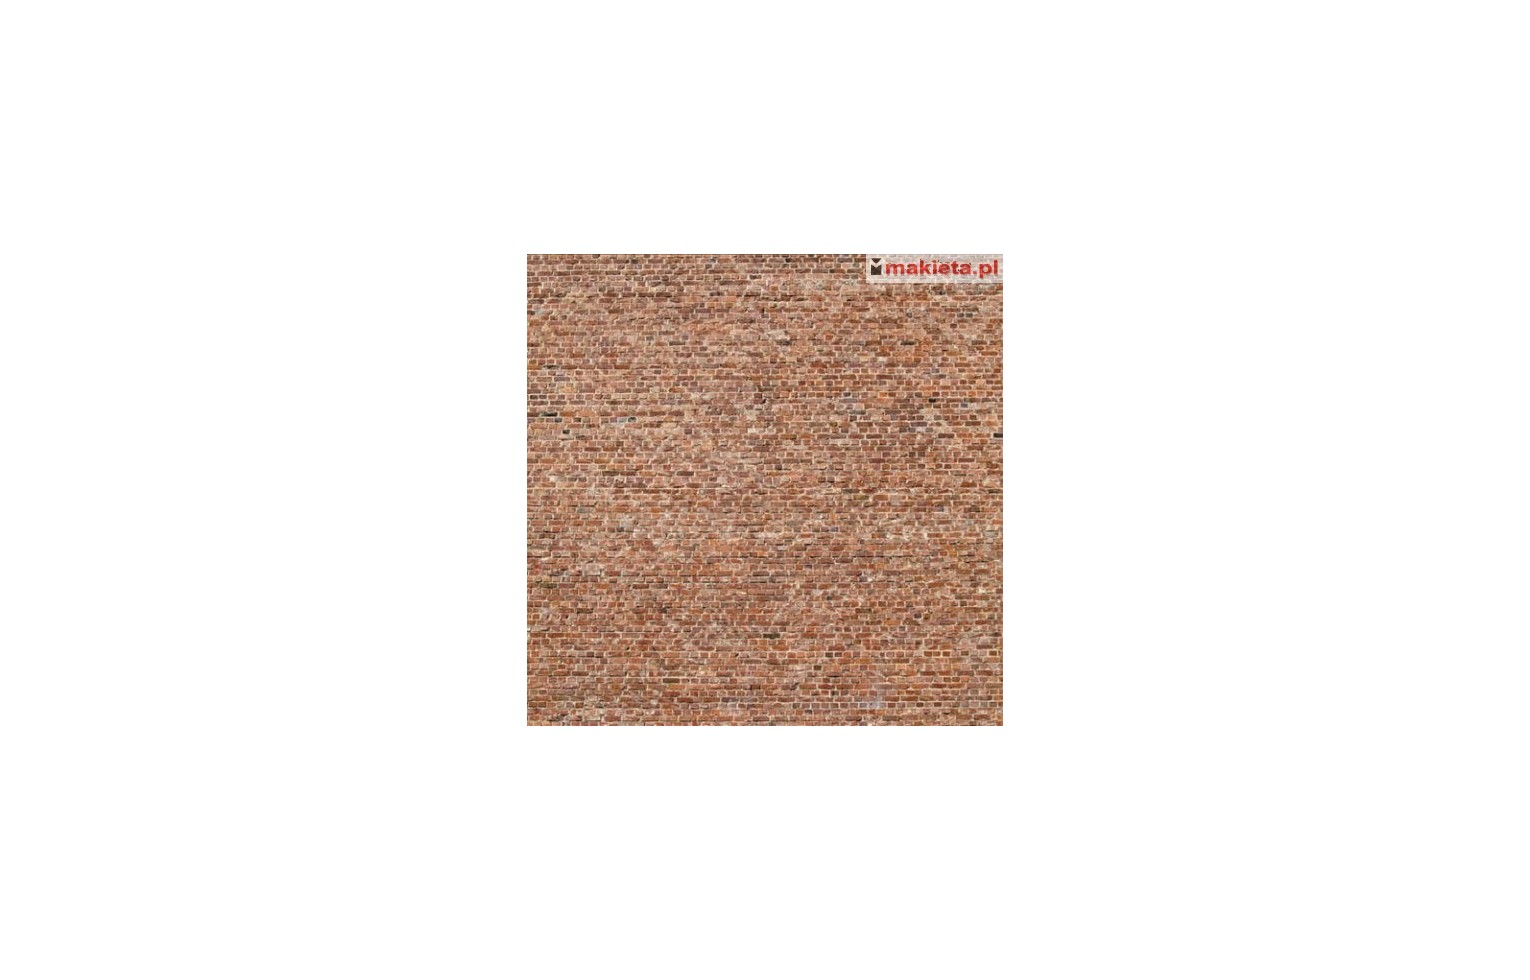 Heki 14002, Mur ceglany, 3 arkusze x 34x21 cm, skala H0